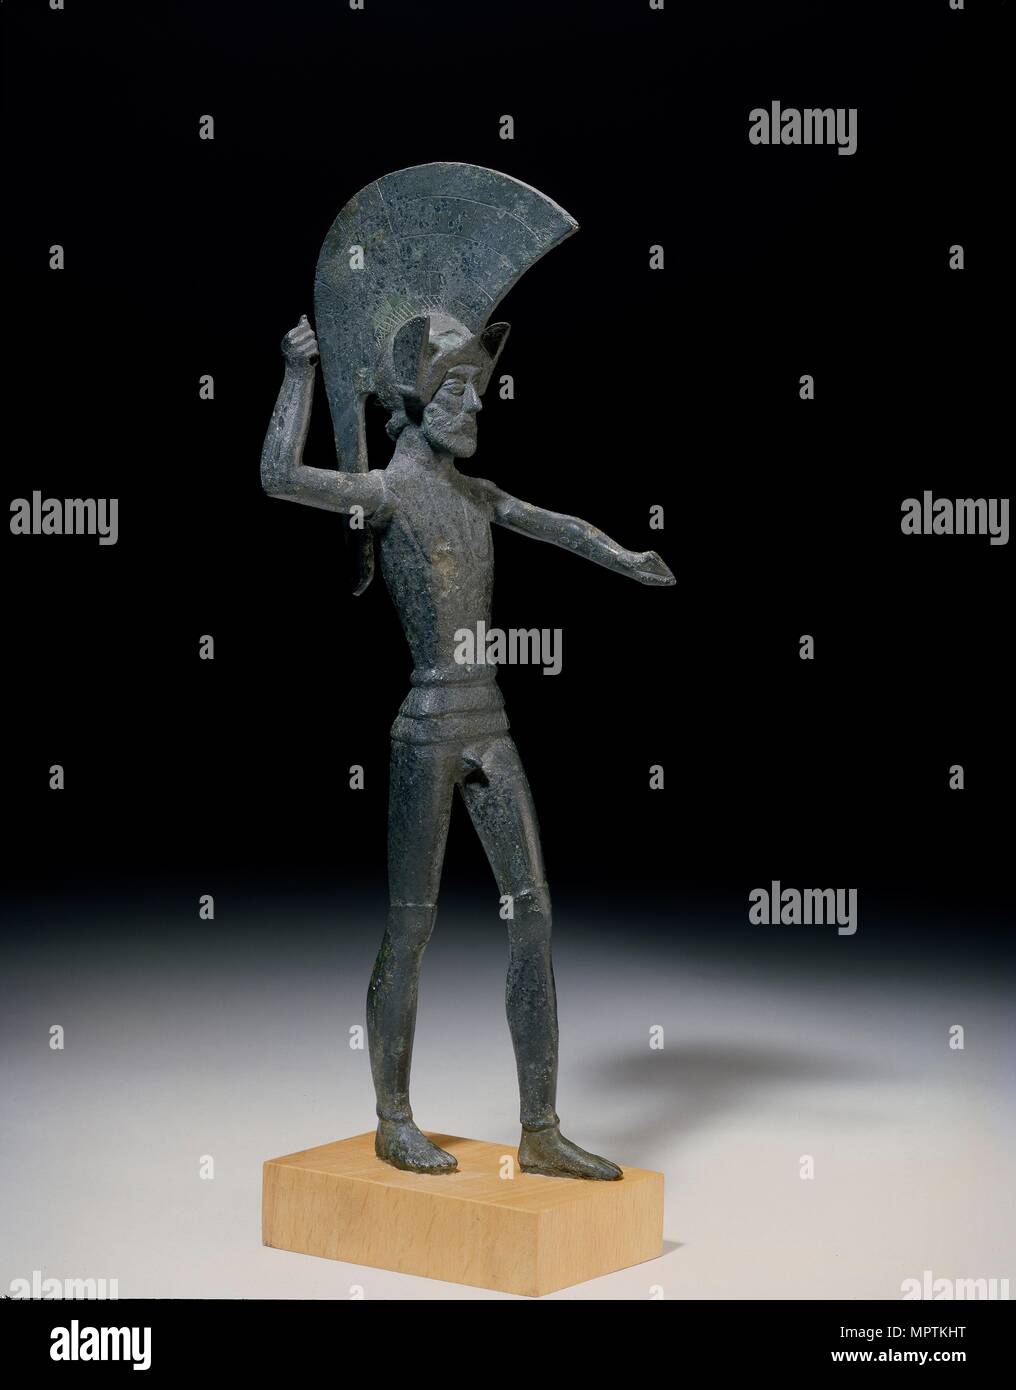 Statuette, 5th century BC. Artist: Unknown. Stock Photo